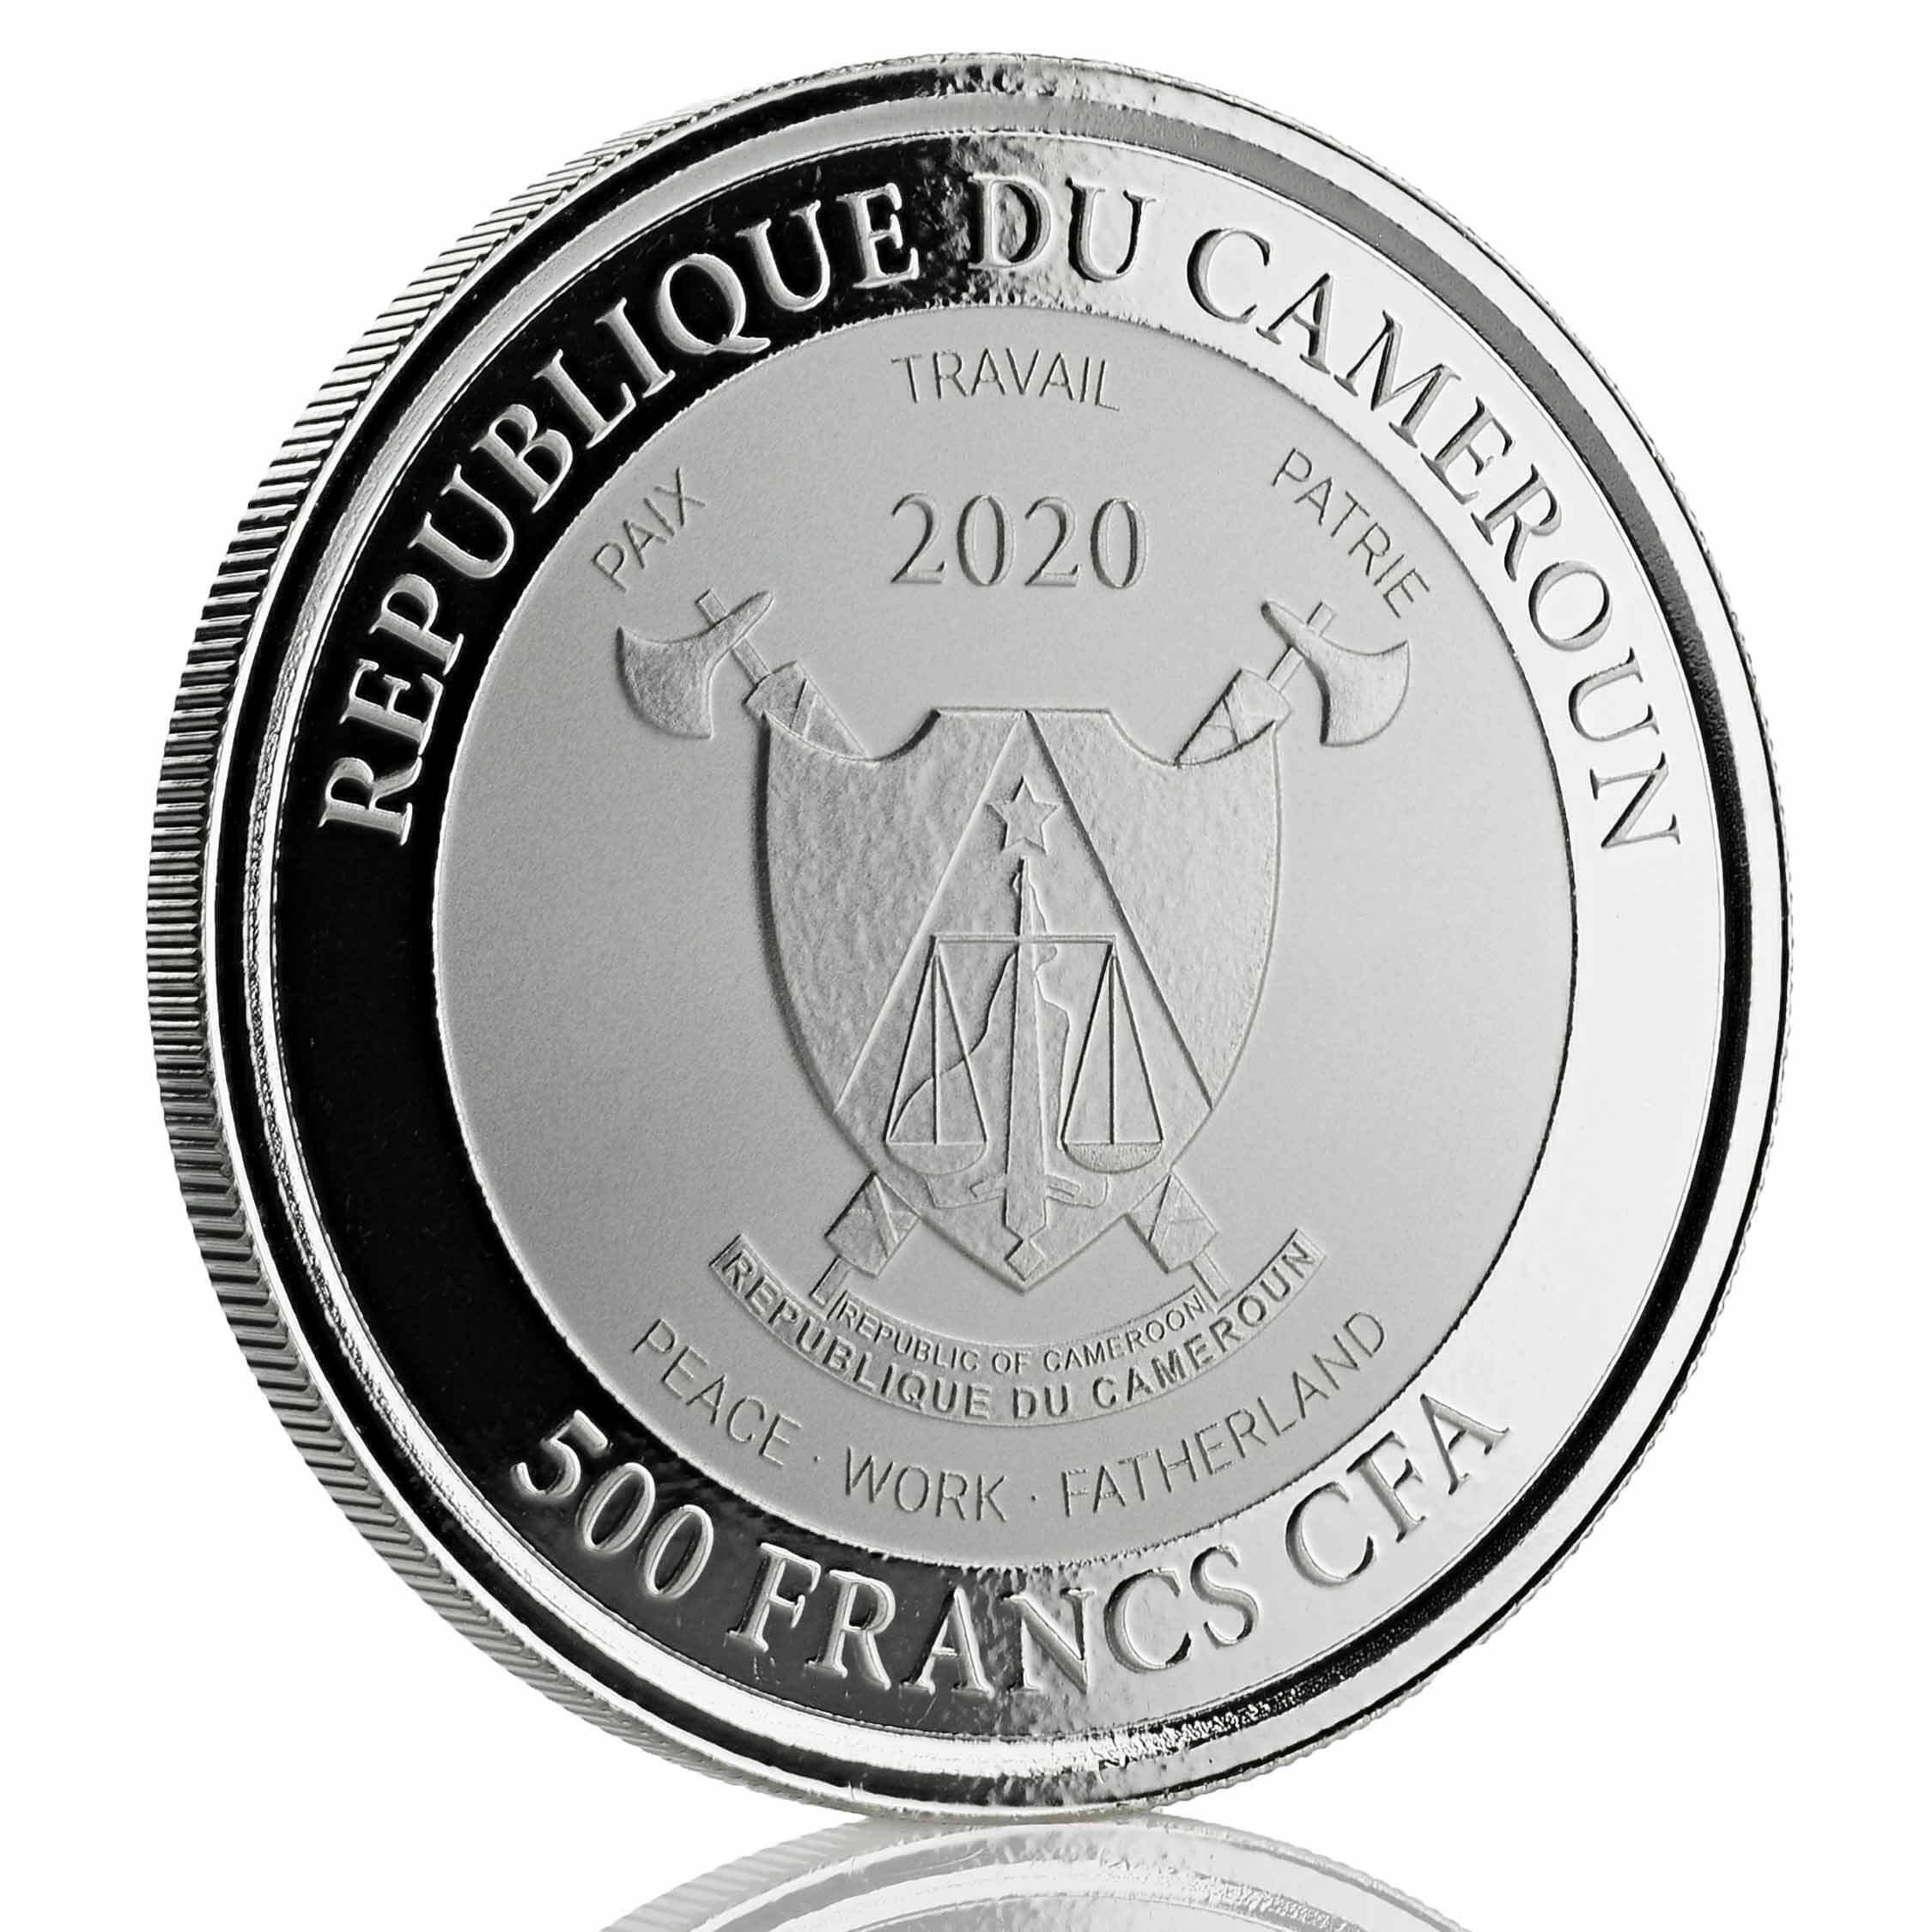 2019 Cameroon Cheetah 1 Oz Silver Coin (copy)